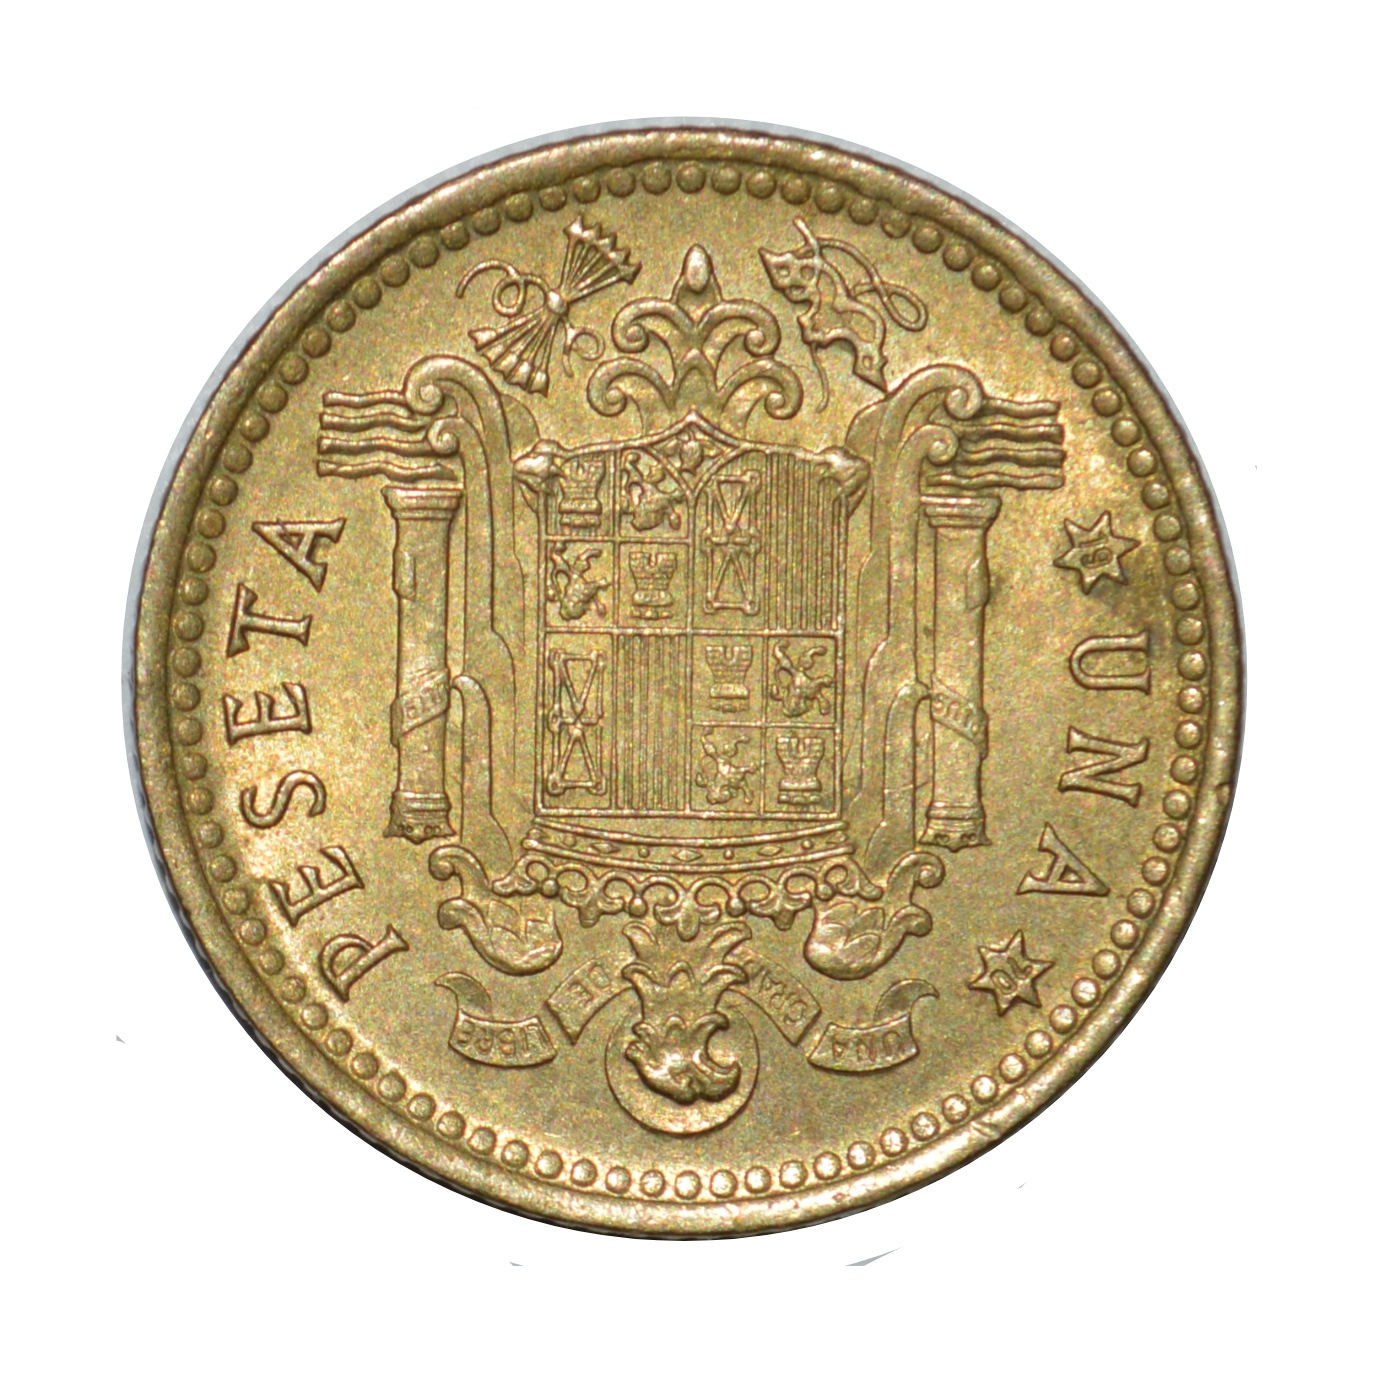 سکه تزیینی طرح کشور اسپانیا مدل یک پزوتای 1966 میلادی